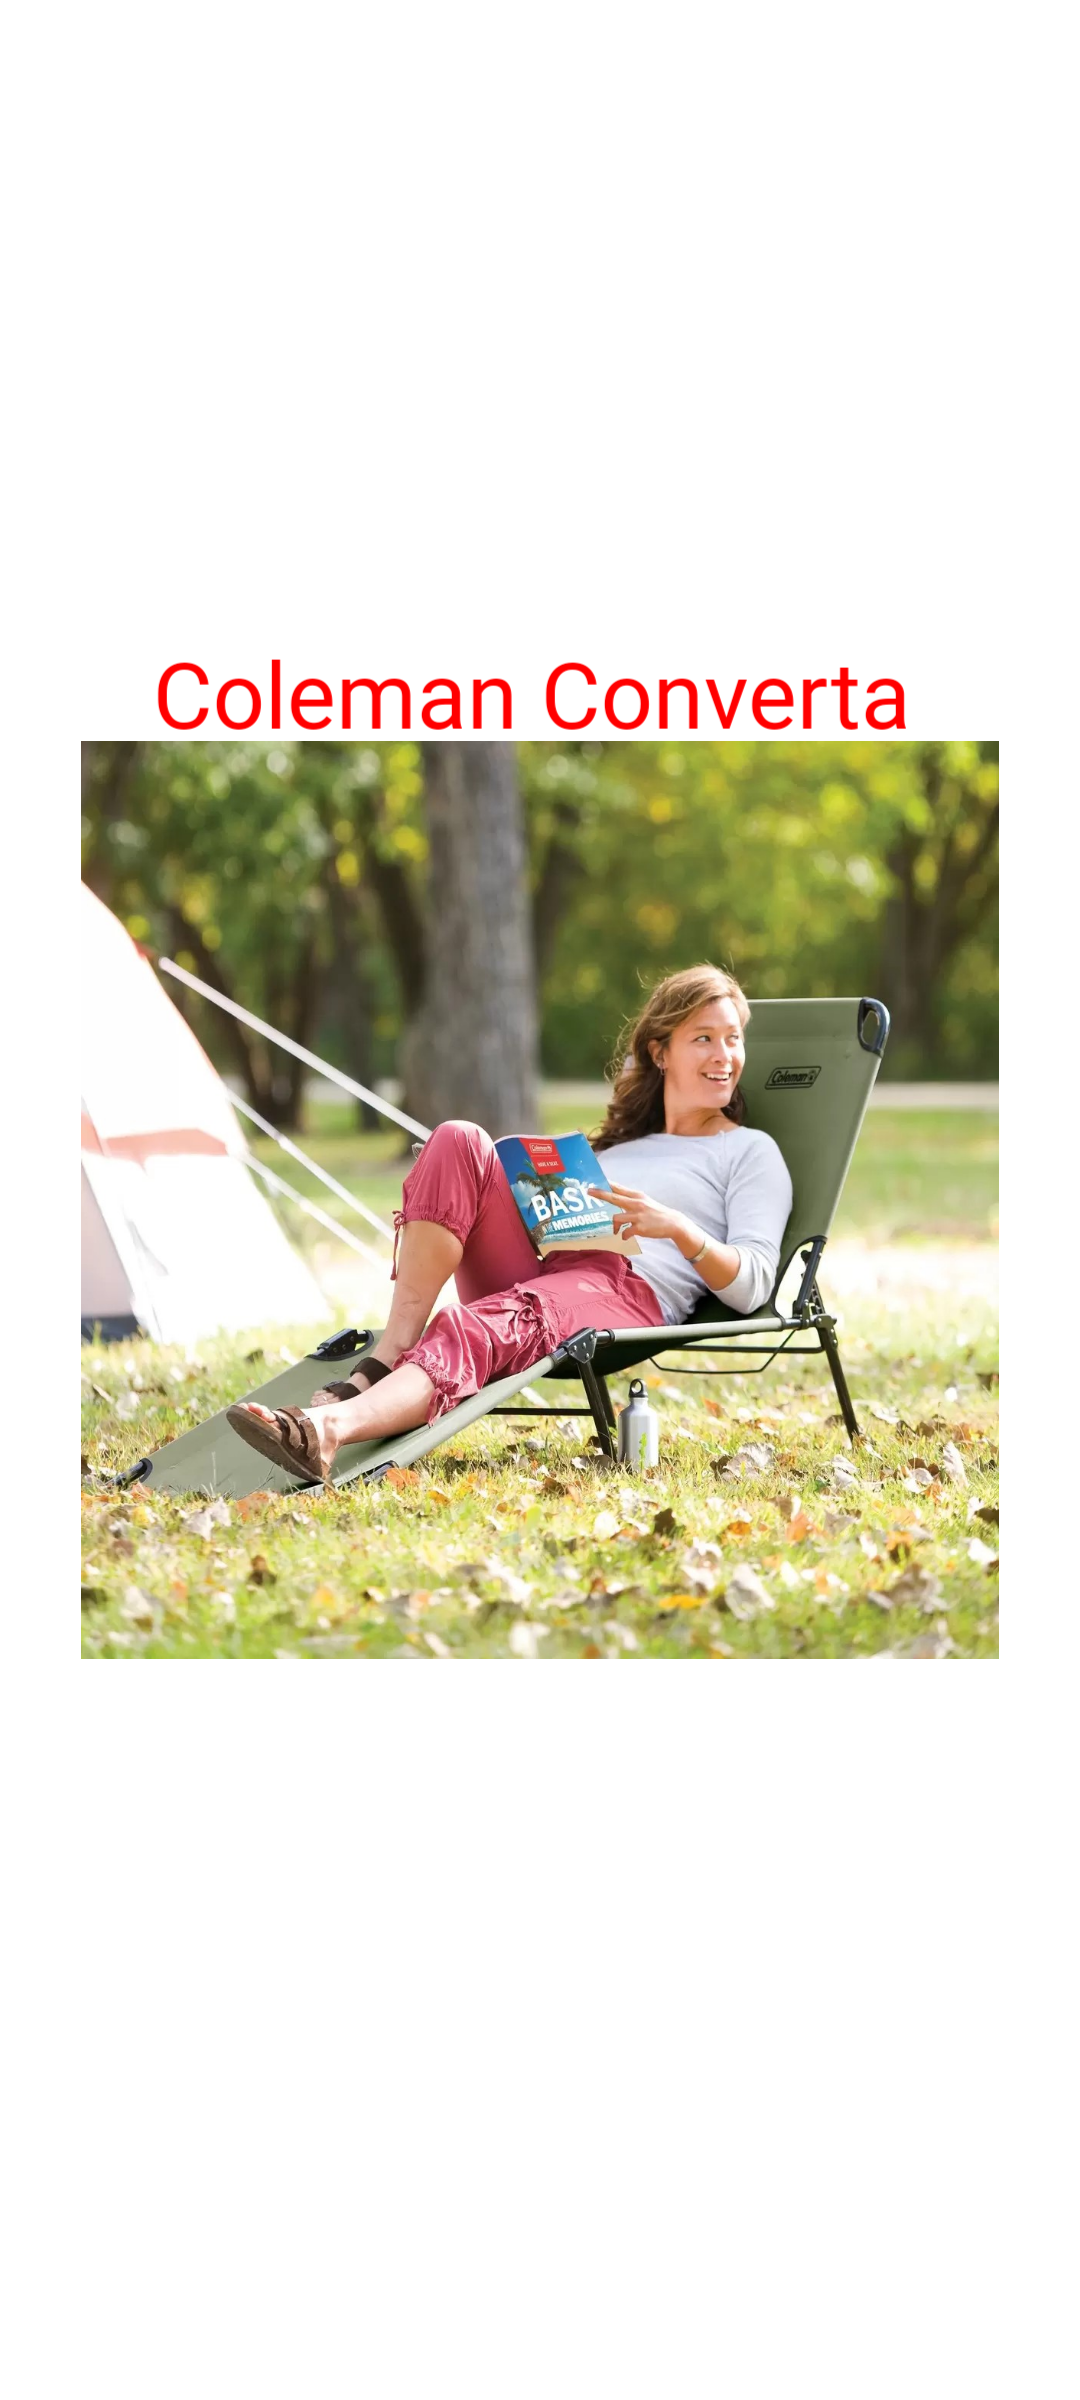 Coleman コールマン コンバータ コット オリーブ色 - 寝袋/寝具